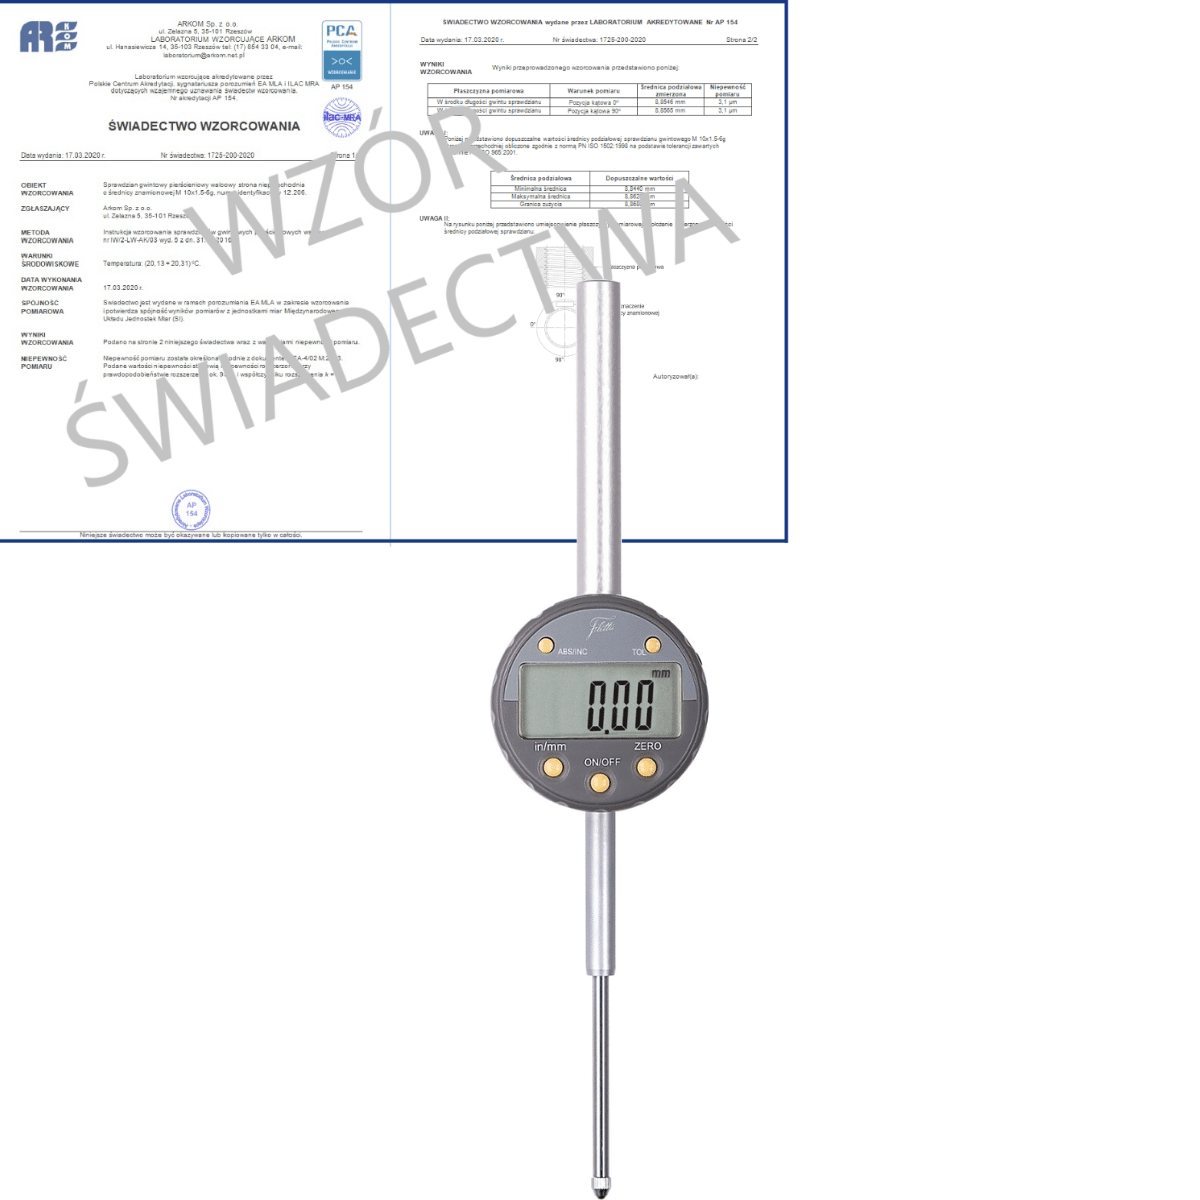 SCHUT czujnik elektroniczny 0-50/0.01mm + świadectwo wzorcowania PCA  907.652 WZORC